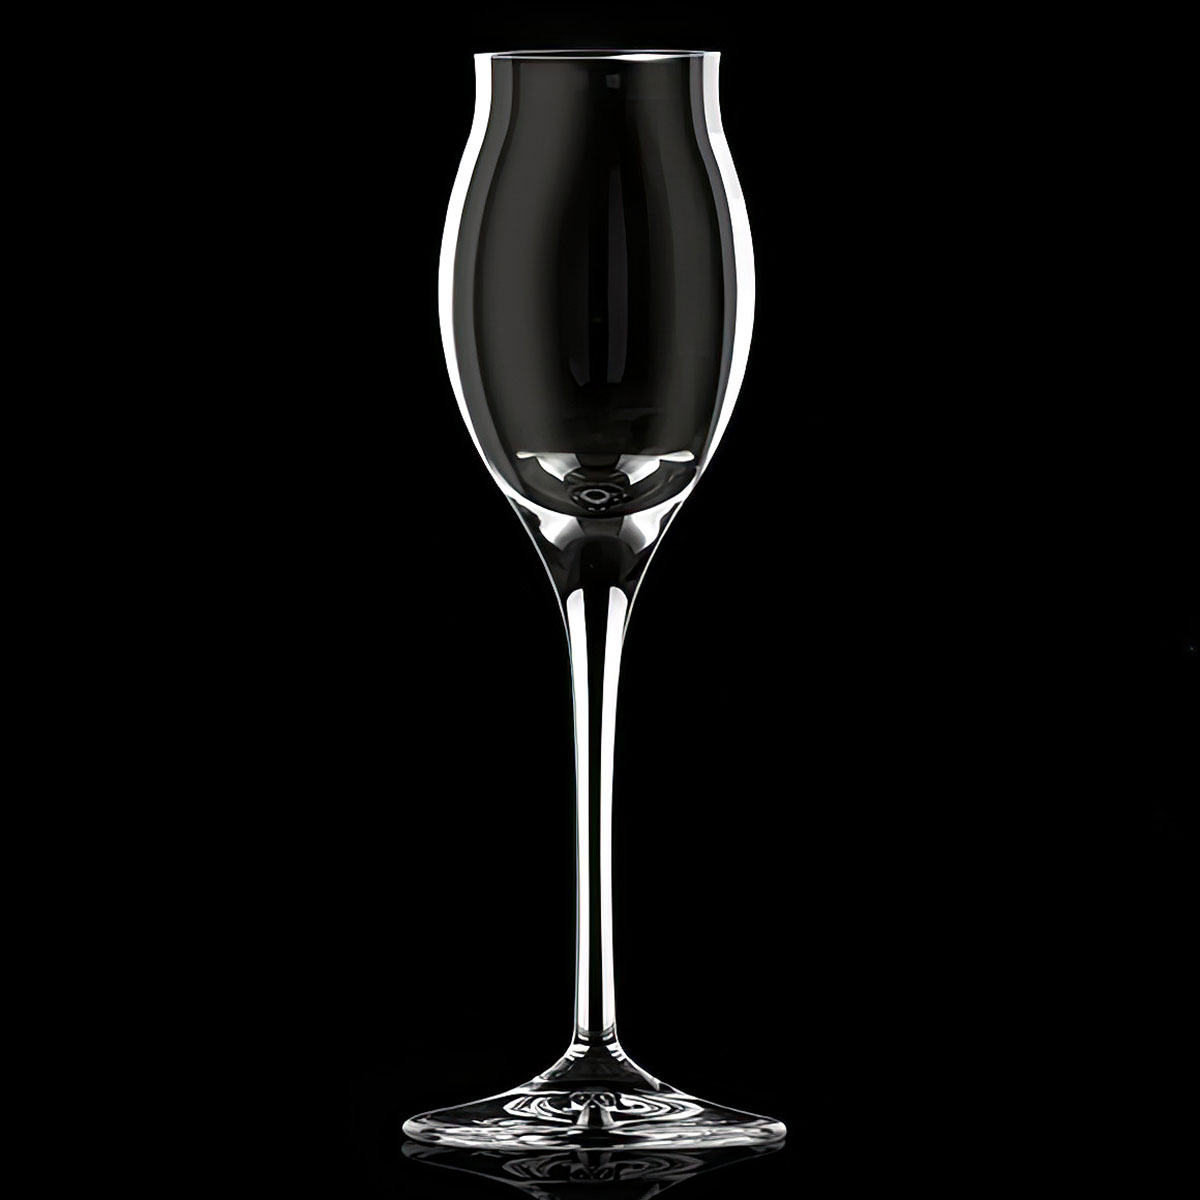 Набор бокалов для крепких напитков RCR Cristalleria Italiana Invino, 6шт RCR Cristalleria Italiana 25349020206